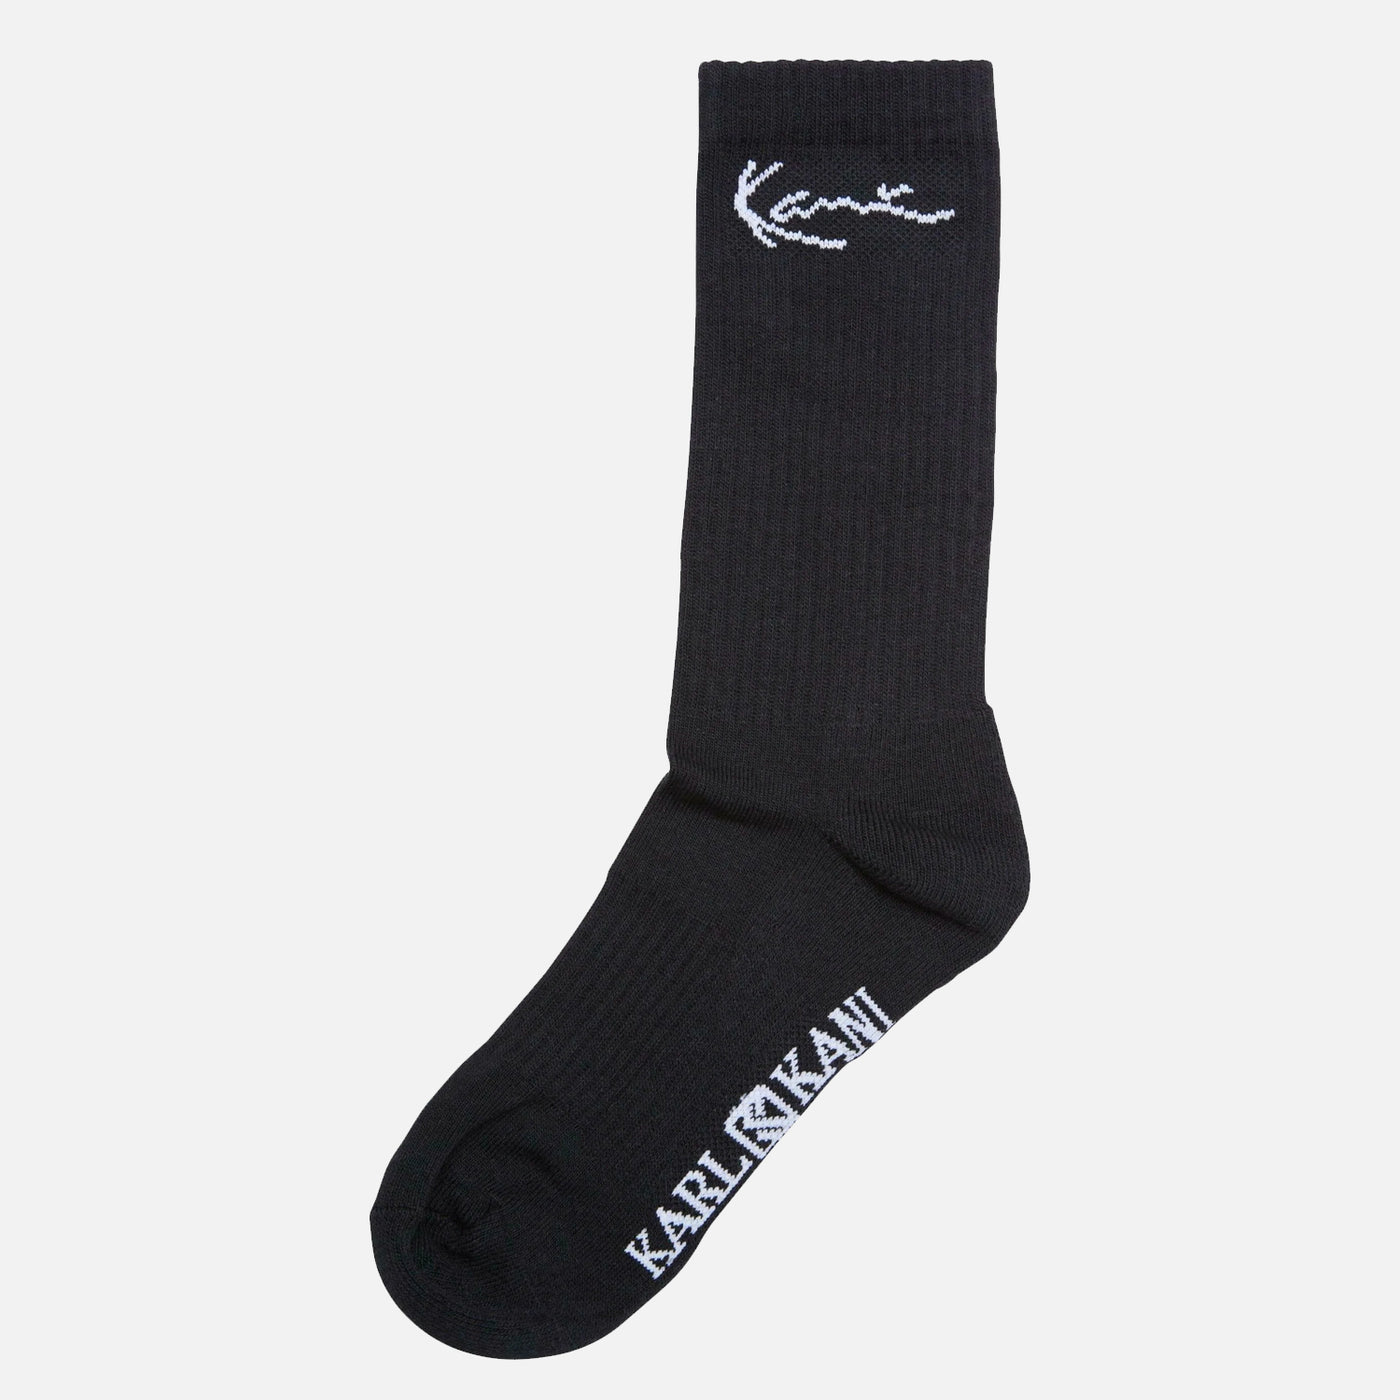 Karl Kani Signature 3-Pack Socks black/flames/white multicolor - Shop-Tetuan